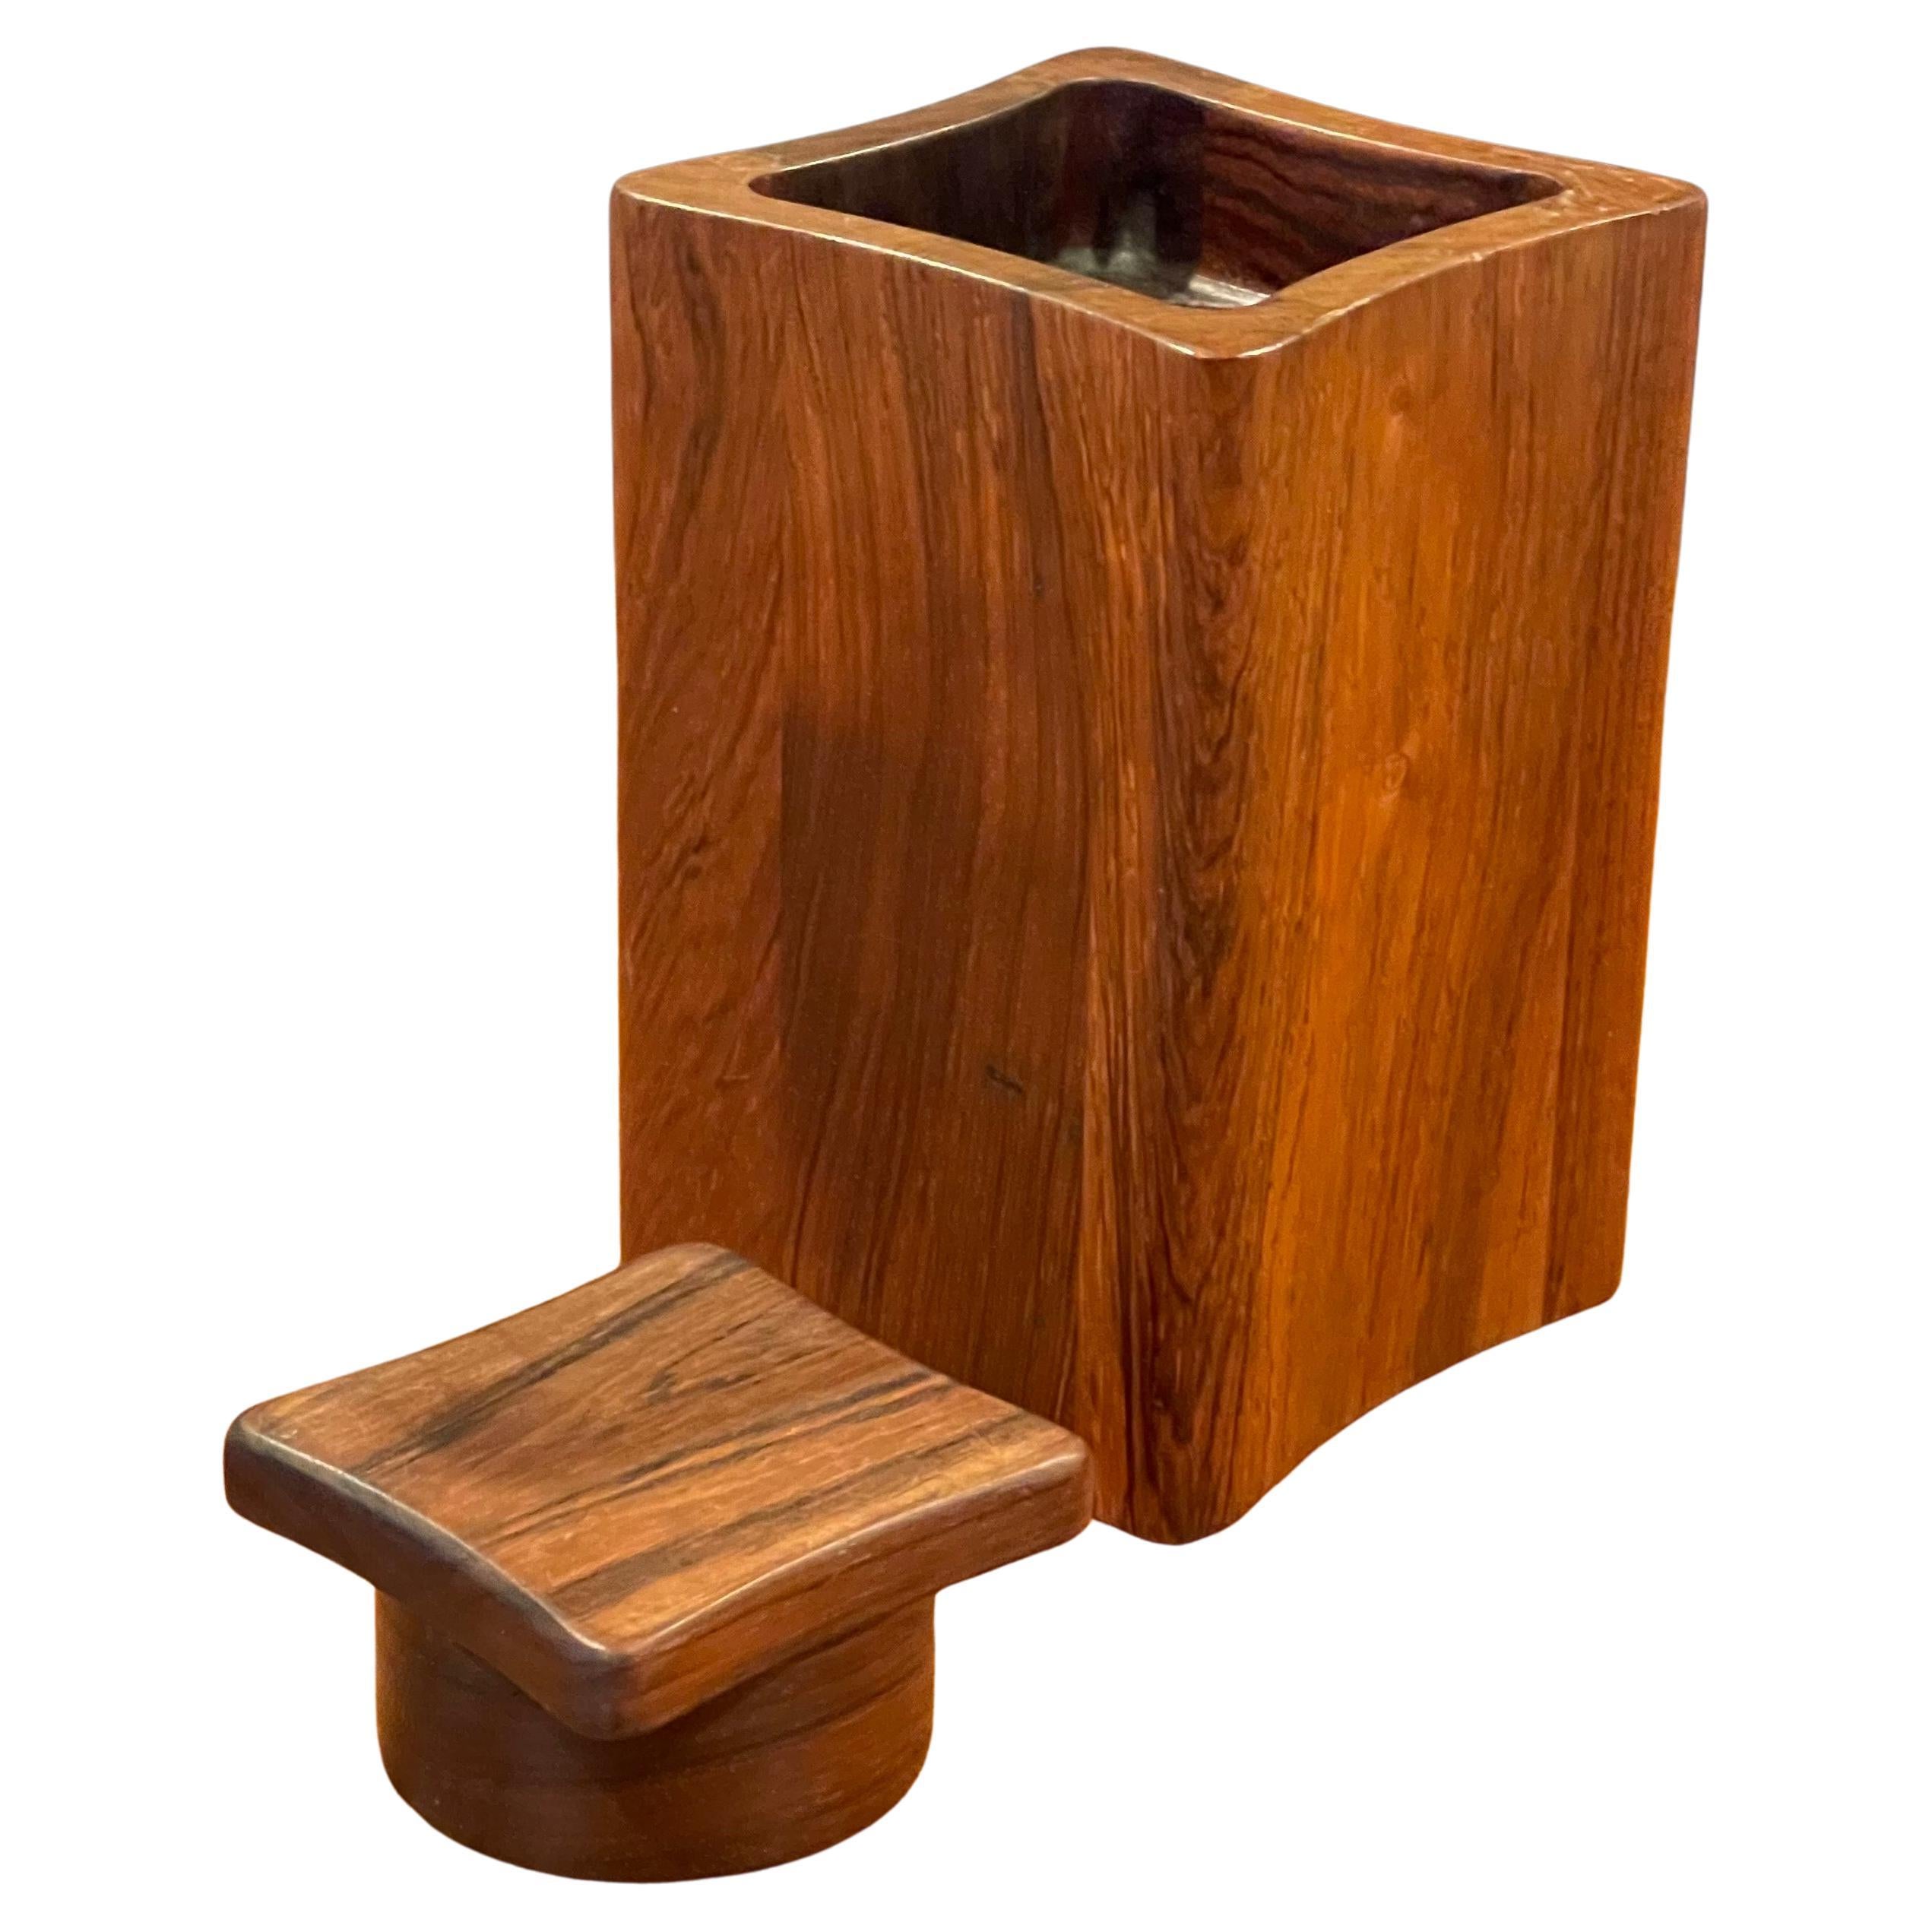 Un récipient, une boîte ou un humidificateur à couvercle carré concave très difficile à trouver, conçu par Jens Quistgaard pour Dansk, vers les années 1960.  La boîte est en palissandre ou en bois de rose (même famille de bois) qui faisait partie de